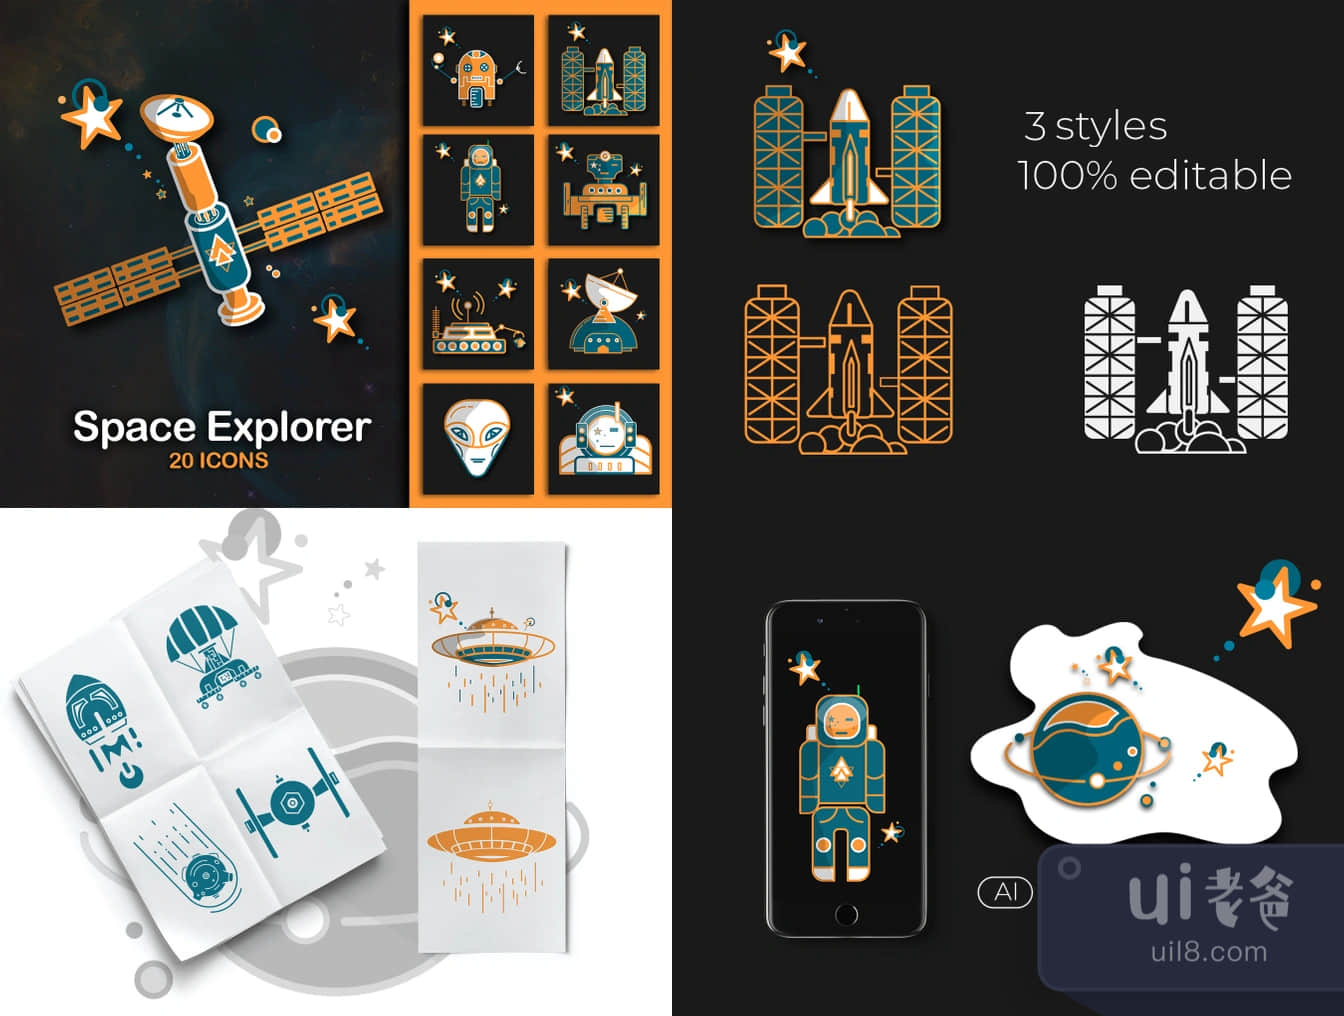 空间探索者图标 (Space Explorer Icons)插图